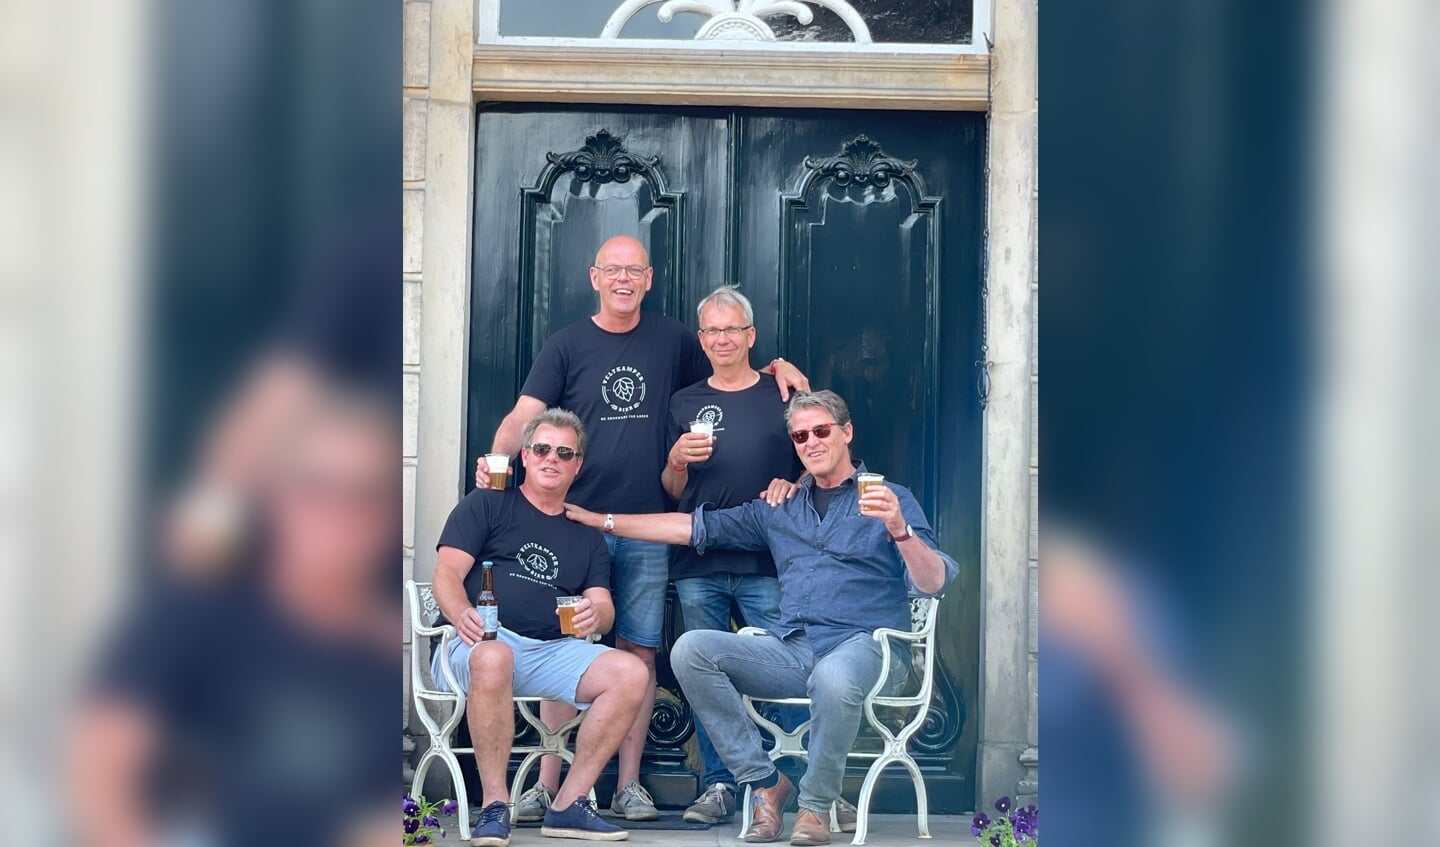 Dit zijn de mannen achter het Veltkamper Bier. Vlnr: Henk Veltkamp, Henk Wansink, Menck Hartholt en Roel de Vries (eigen foto)